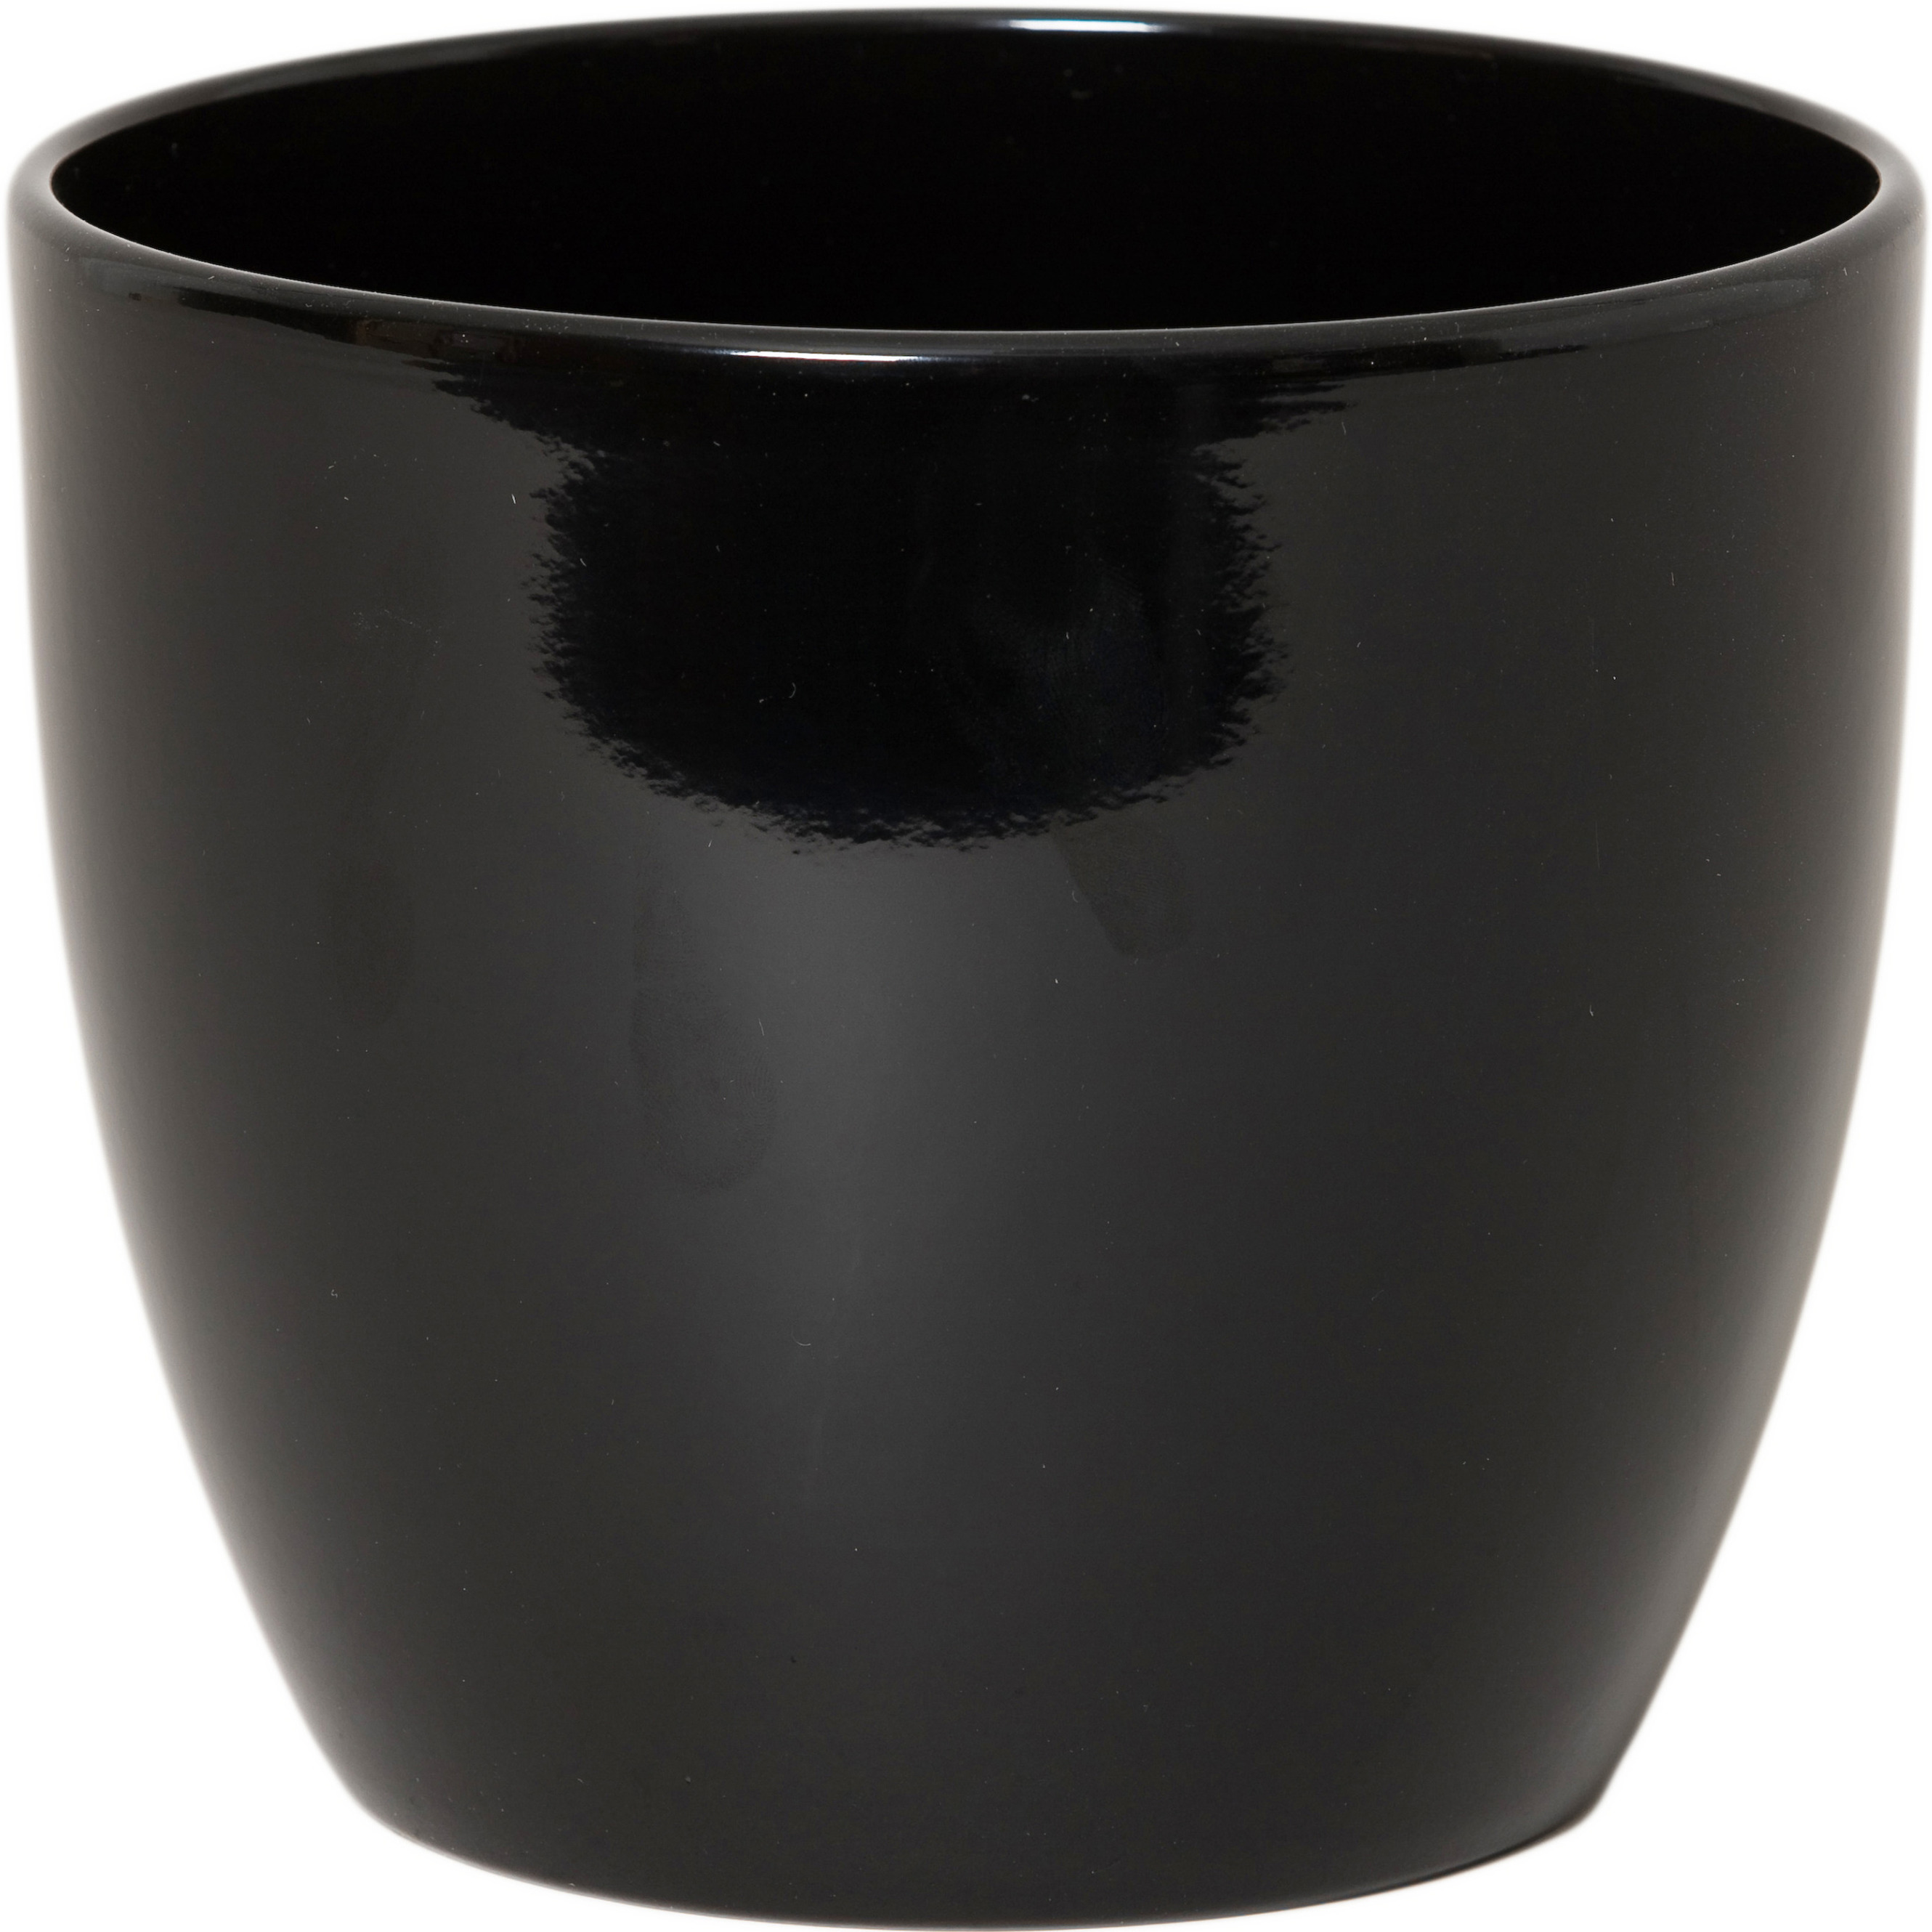 Floran Bloempot glanzend zwart keramiek voor kamerplant H29 x D36 cm -